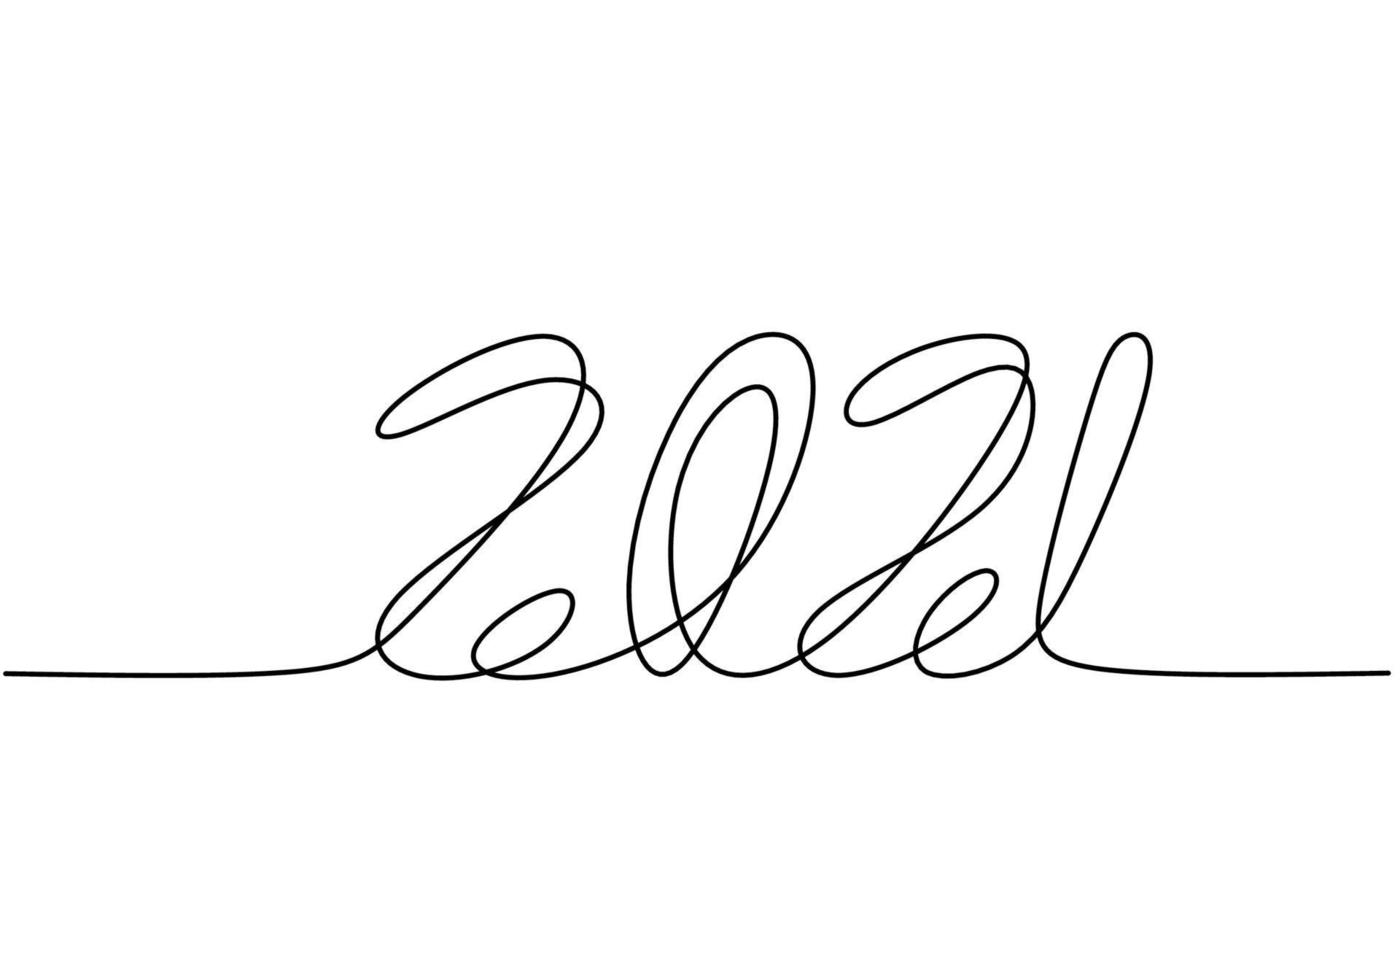 kontinuerlig en linje ritning av ett nytt år 2021. Kinesiskt nyår av bullen handskrivna bokstäver. firande nytt år koncept isolerad på vit bakgrund. vektor skiss illustration